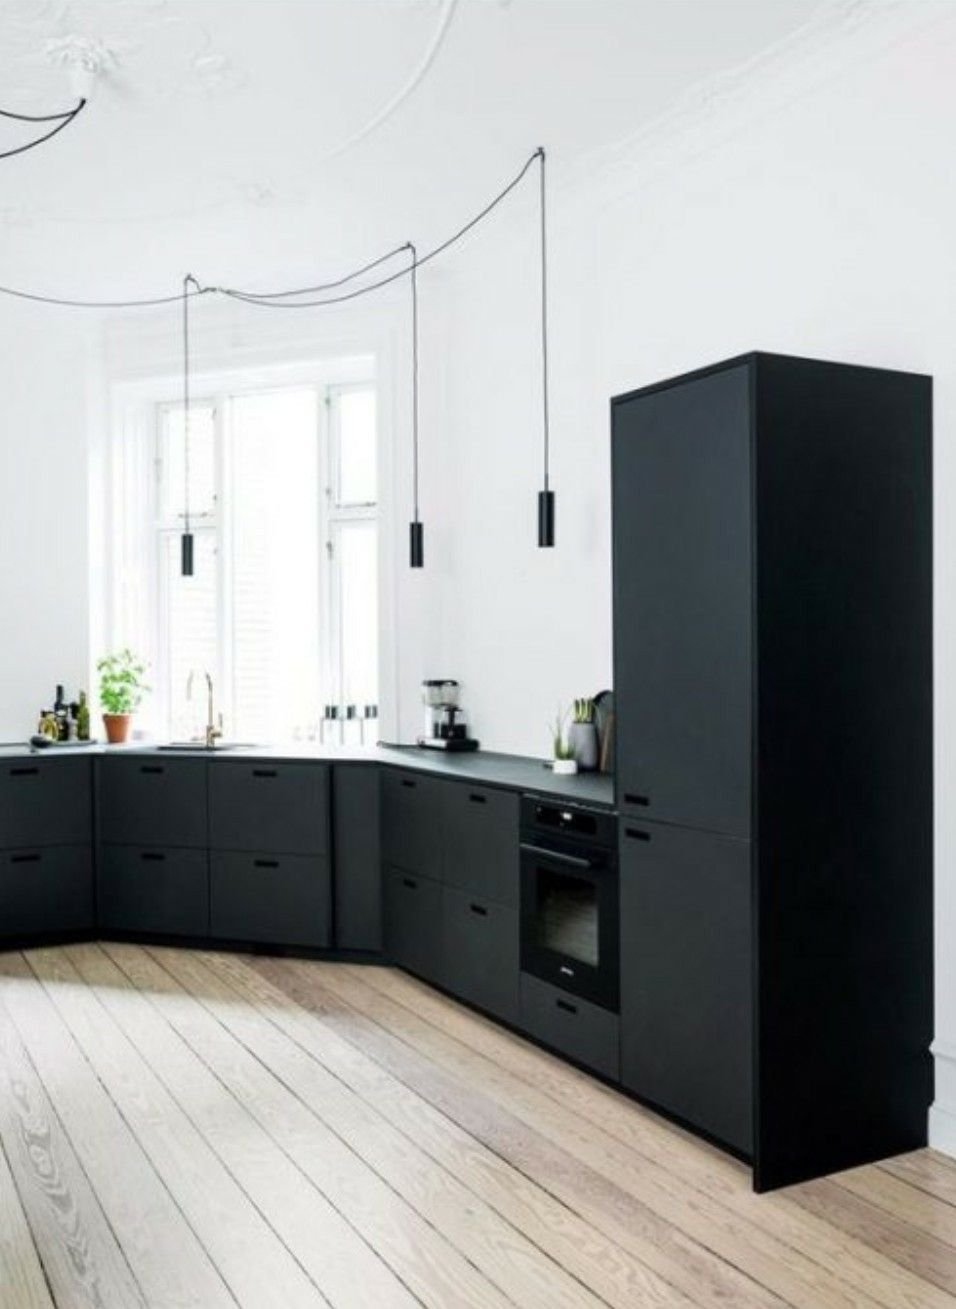 Черный холодильник в интерьере кухни фото